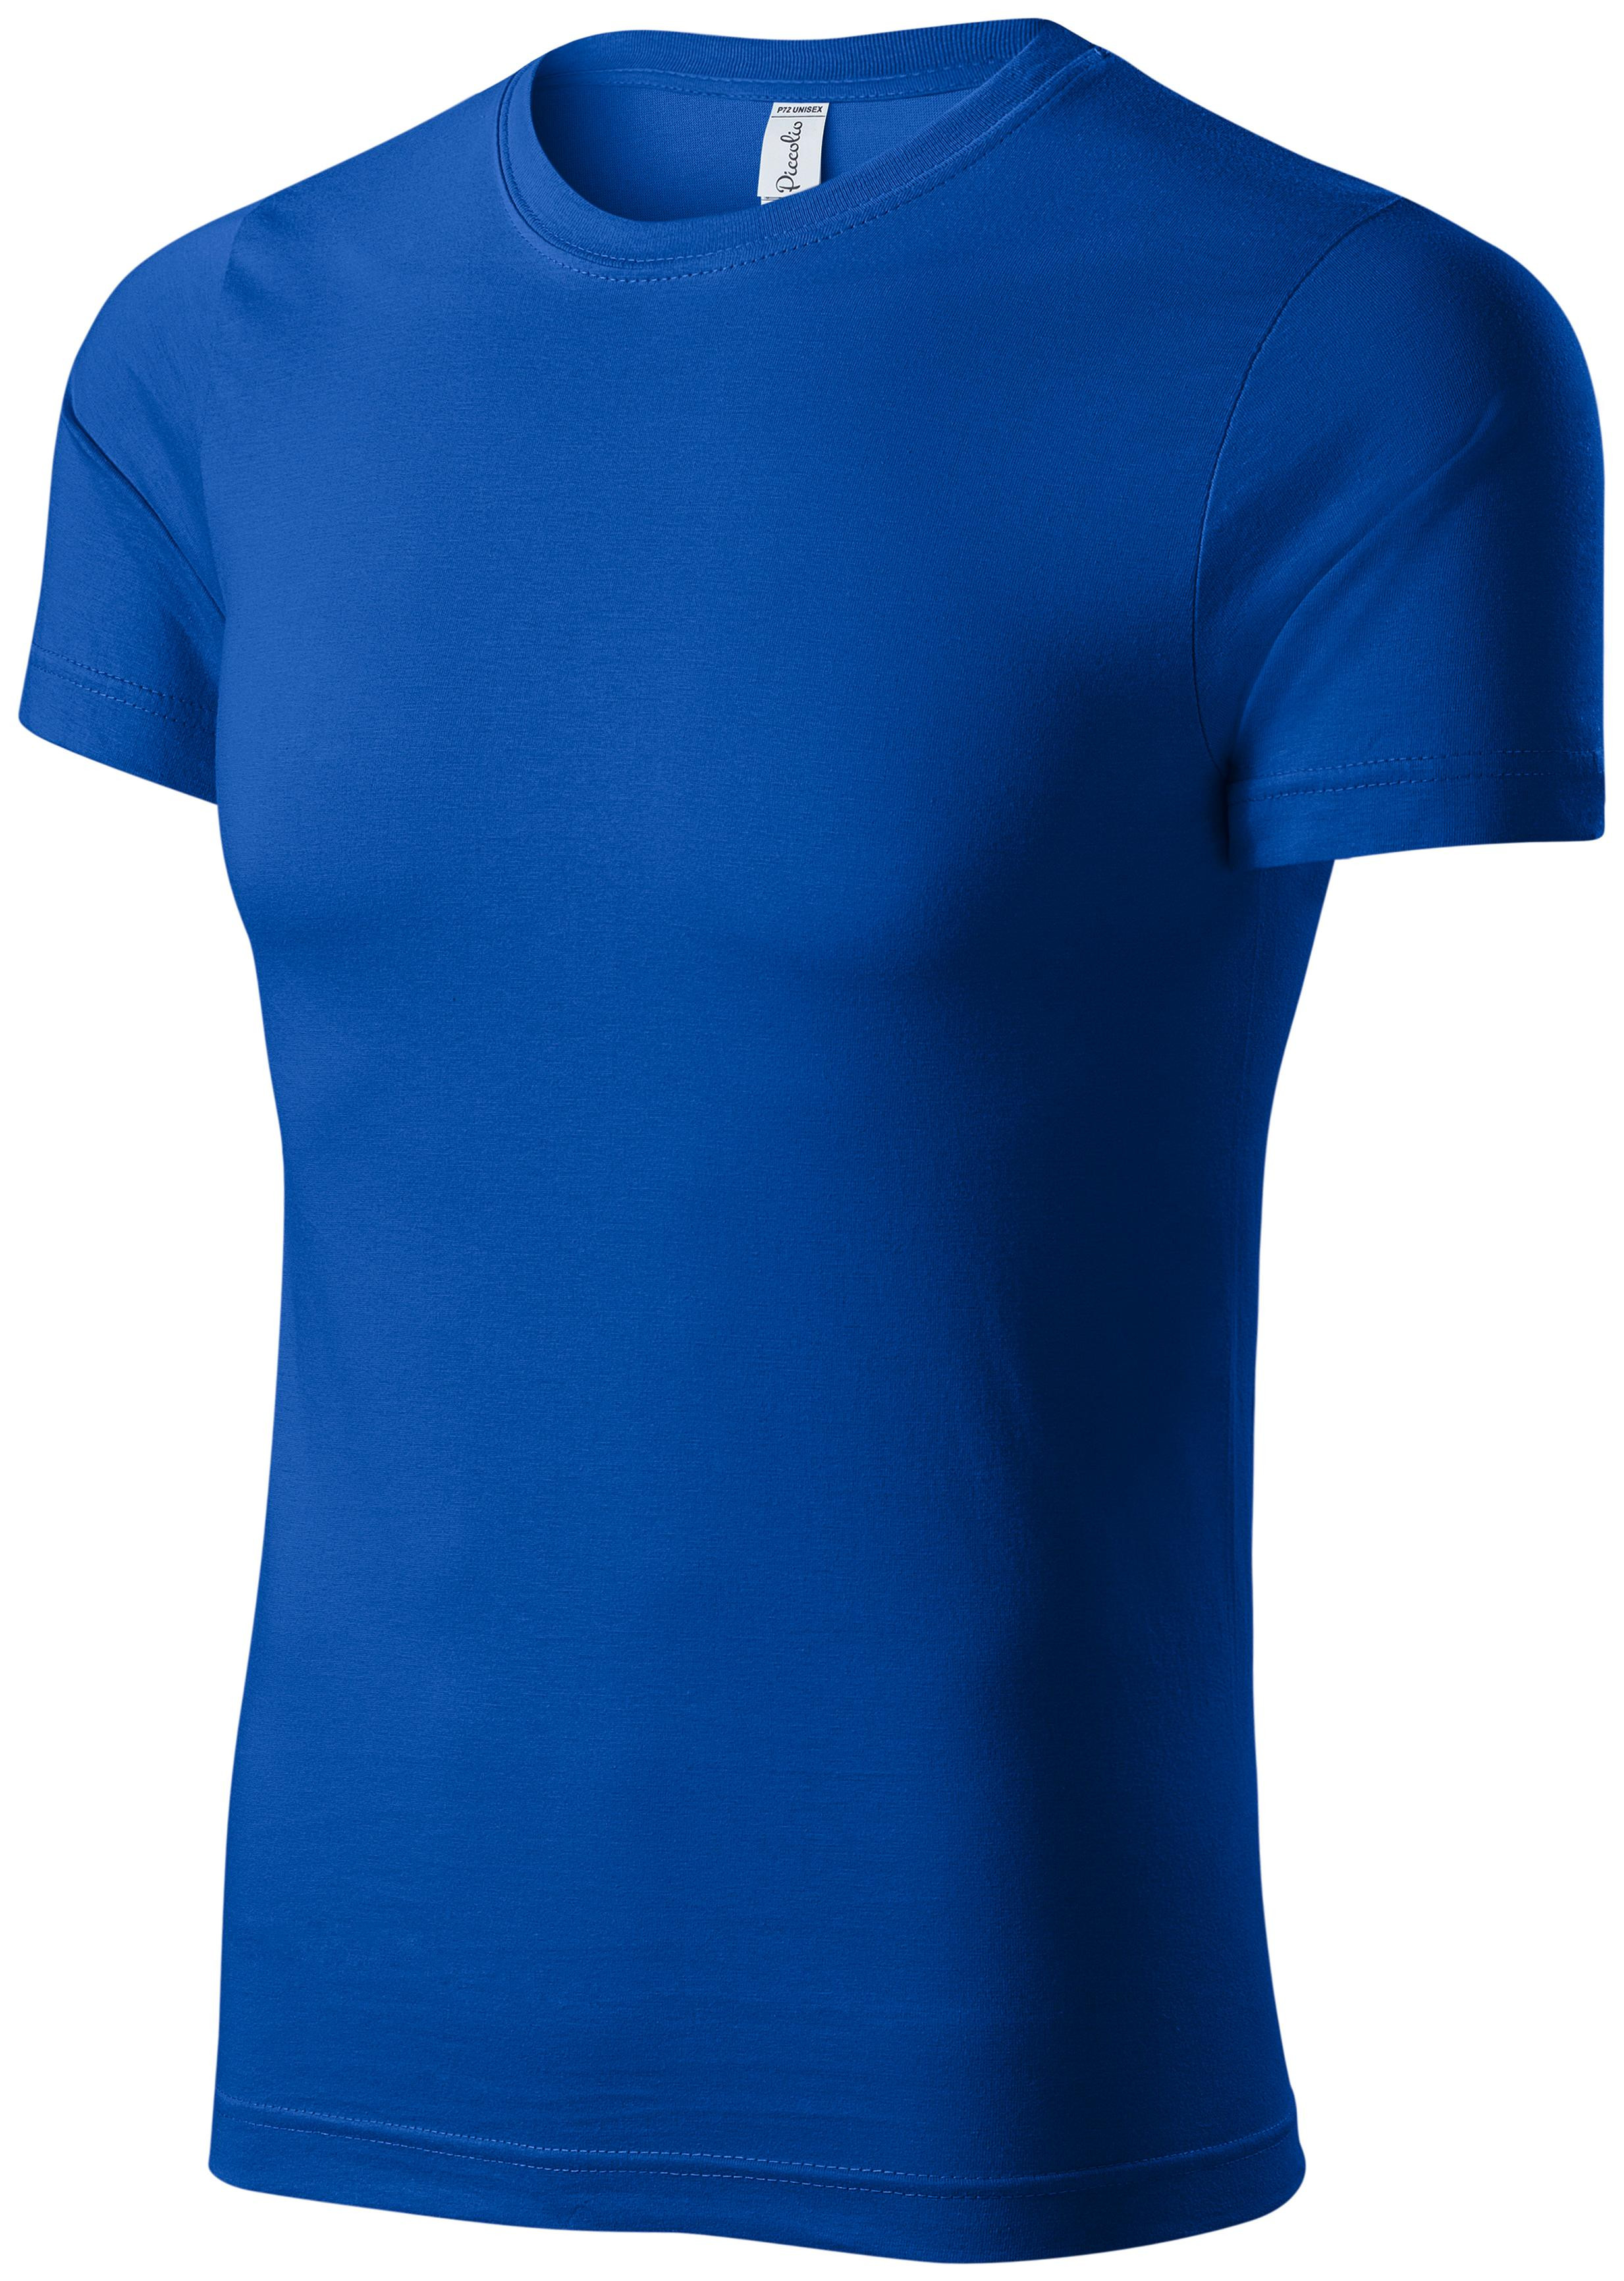 Detské ľahké tričko, kráľovská modrá, 110cm / 4roky